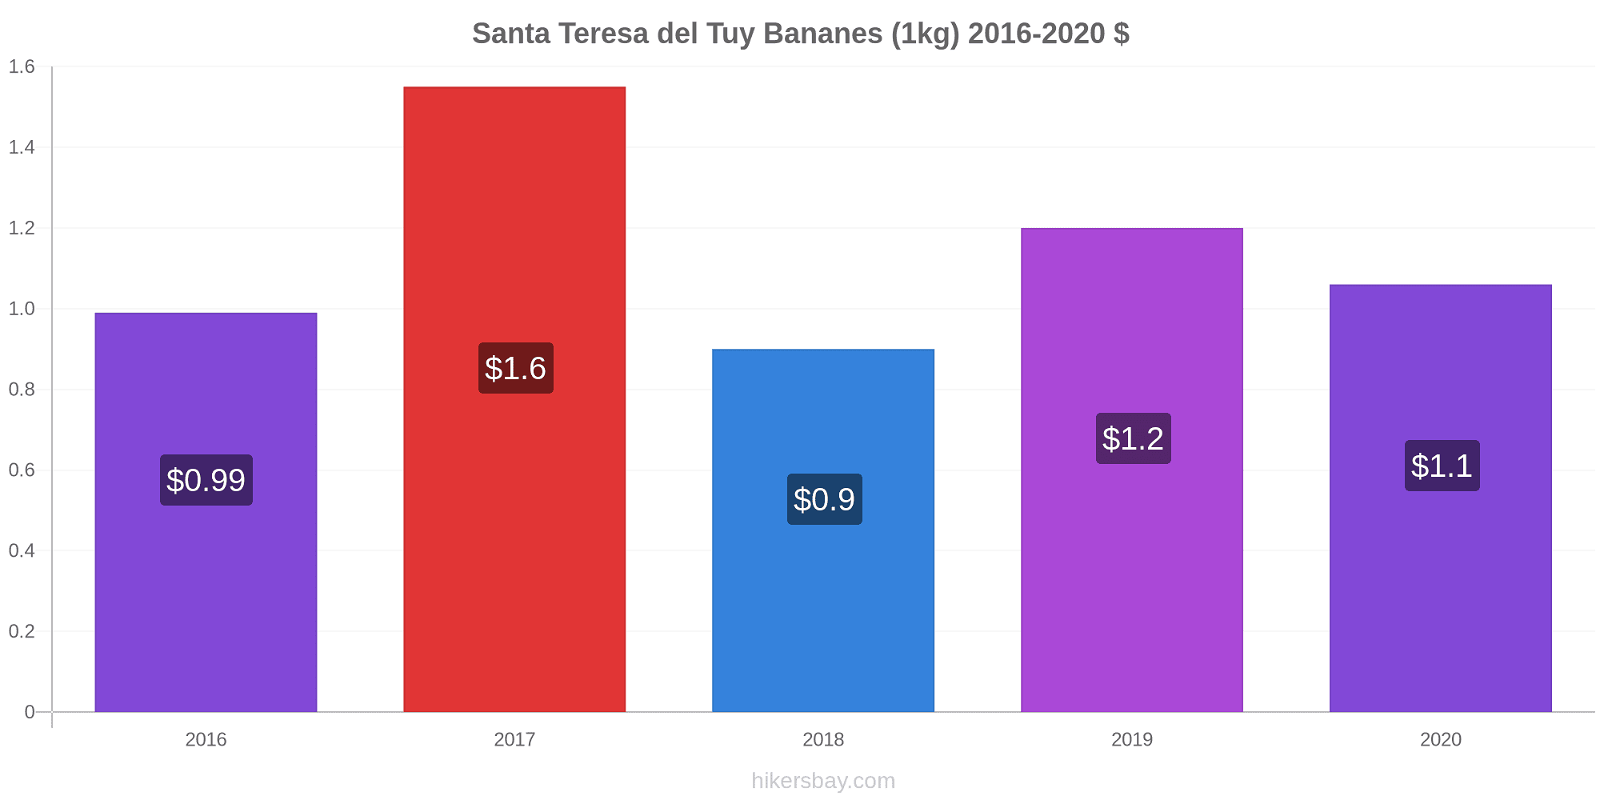 Santa Teresa del Tuy changements de prix Bananes (1kg) hikersbay.com